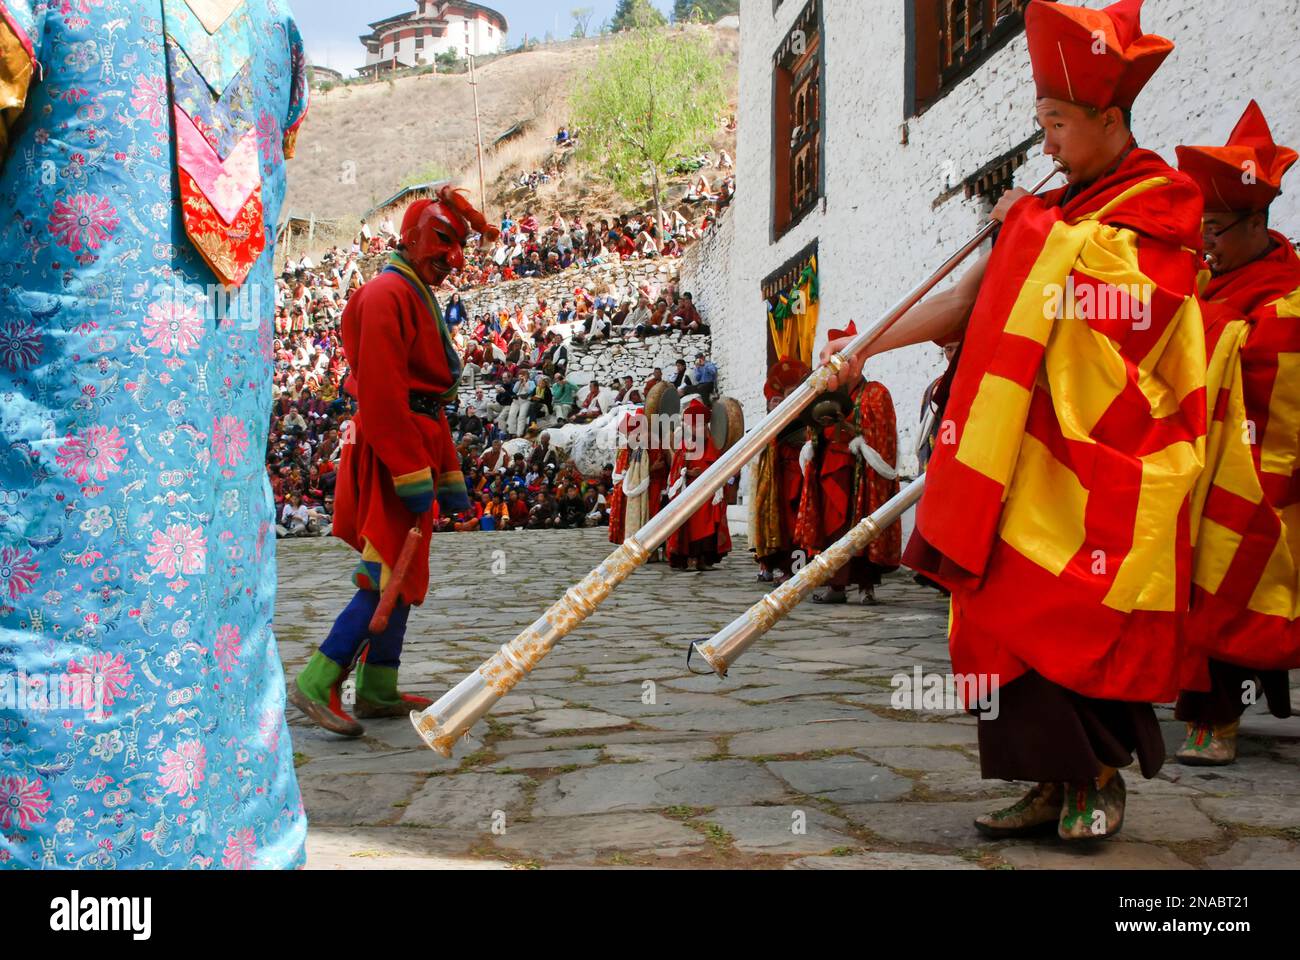 Gli artisti in costume suonano strumenti tradizionali durante una danza Cham al Festival bhutanese Paro Tshechu all'interno di Paro Dzong, un monastero e... Foto Stock